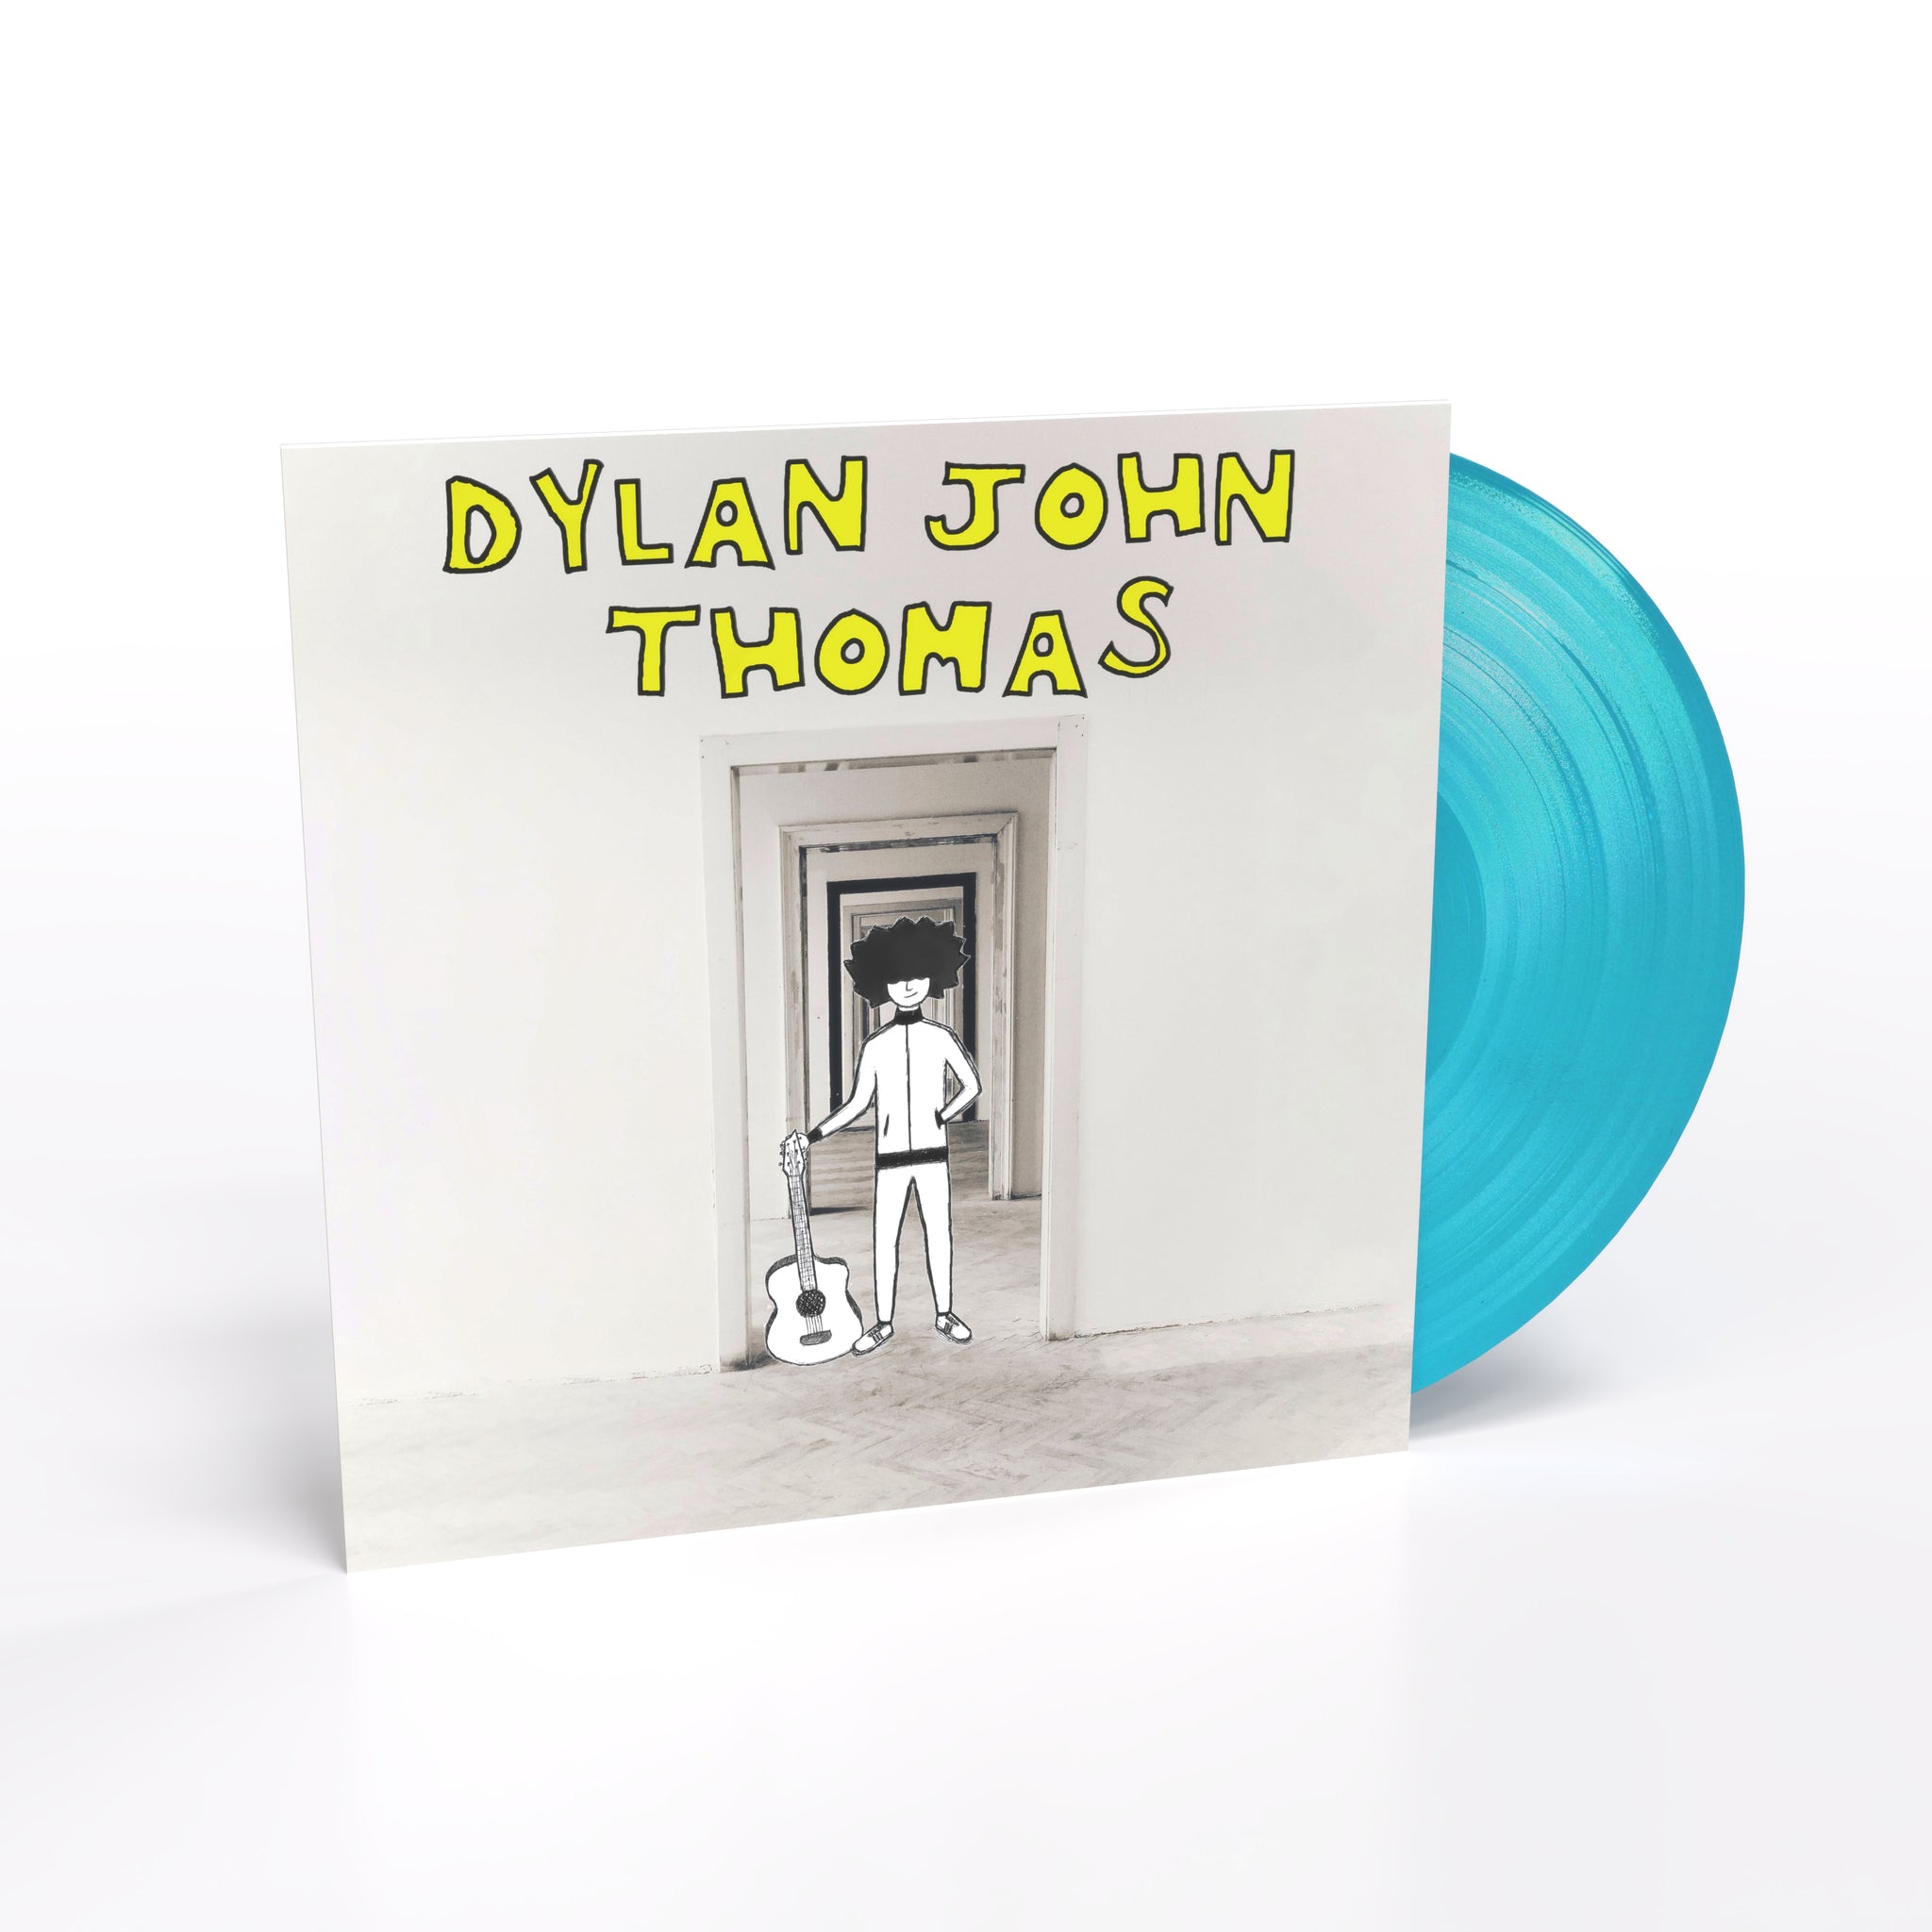 DYLAN JOHN THOMAS - Dylan John Thomas - LP - Turquoise Vinyl [JAN 26]